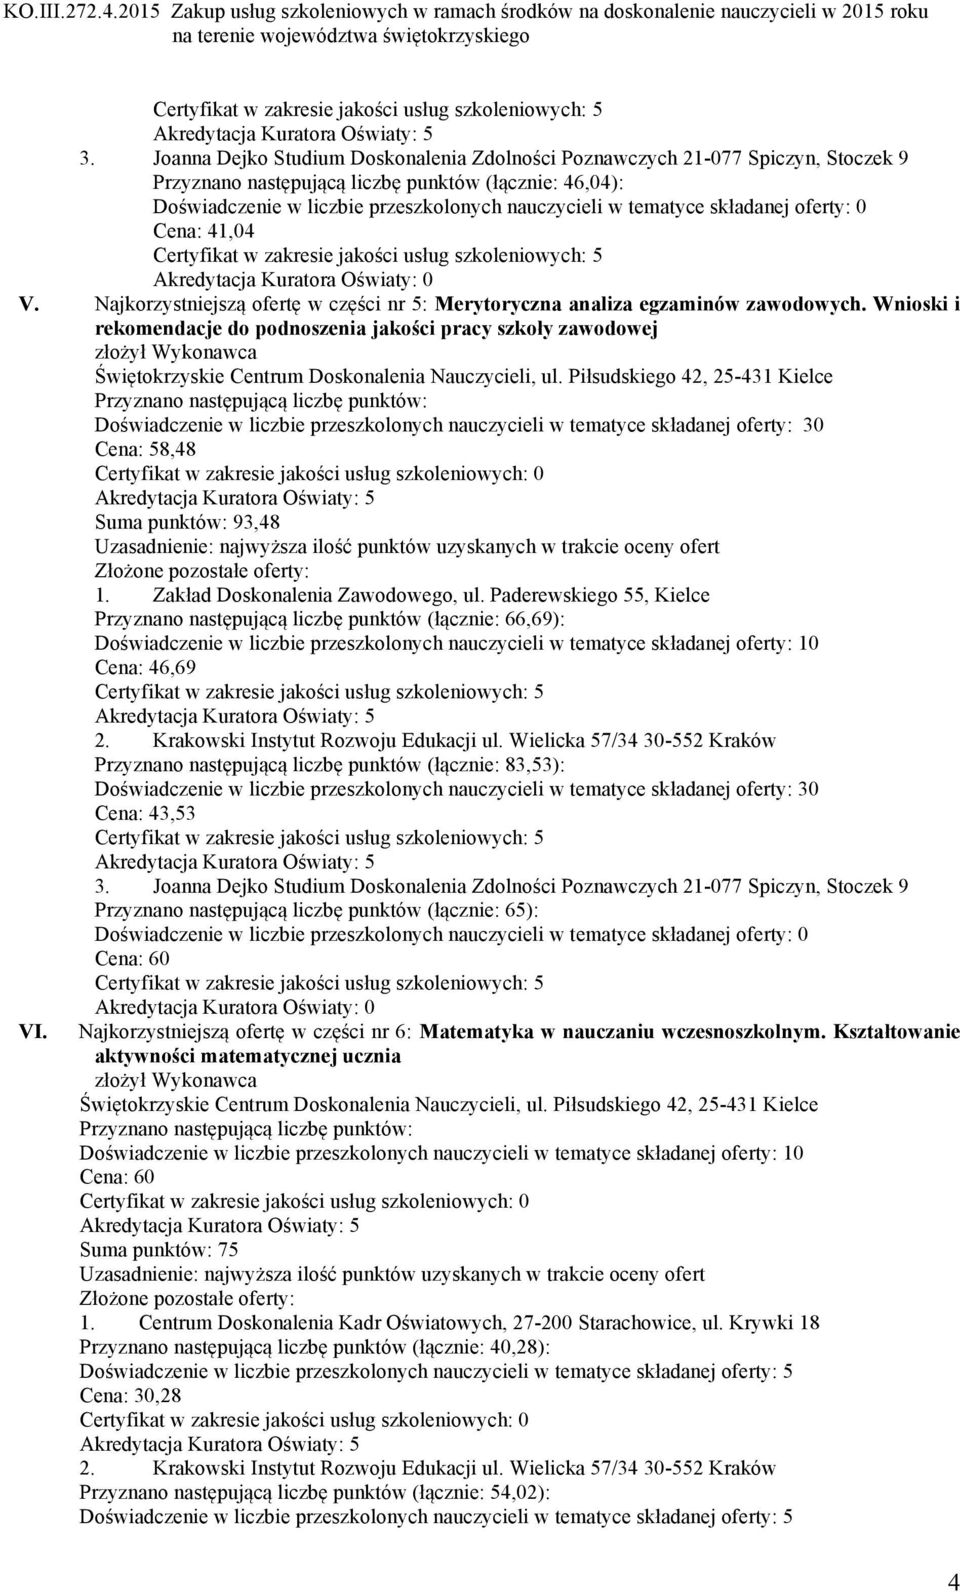 Paderewskiego 55, Kielce Przyznano następującą liczbę punktów (łącznie: 66,69): Cena: 46,69 Przyznano następującą liczbę punktów (łącznie: 83,53): Cena: 43,53 Przyznano następującą liczbę punktów